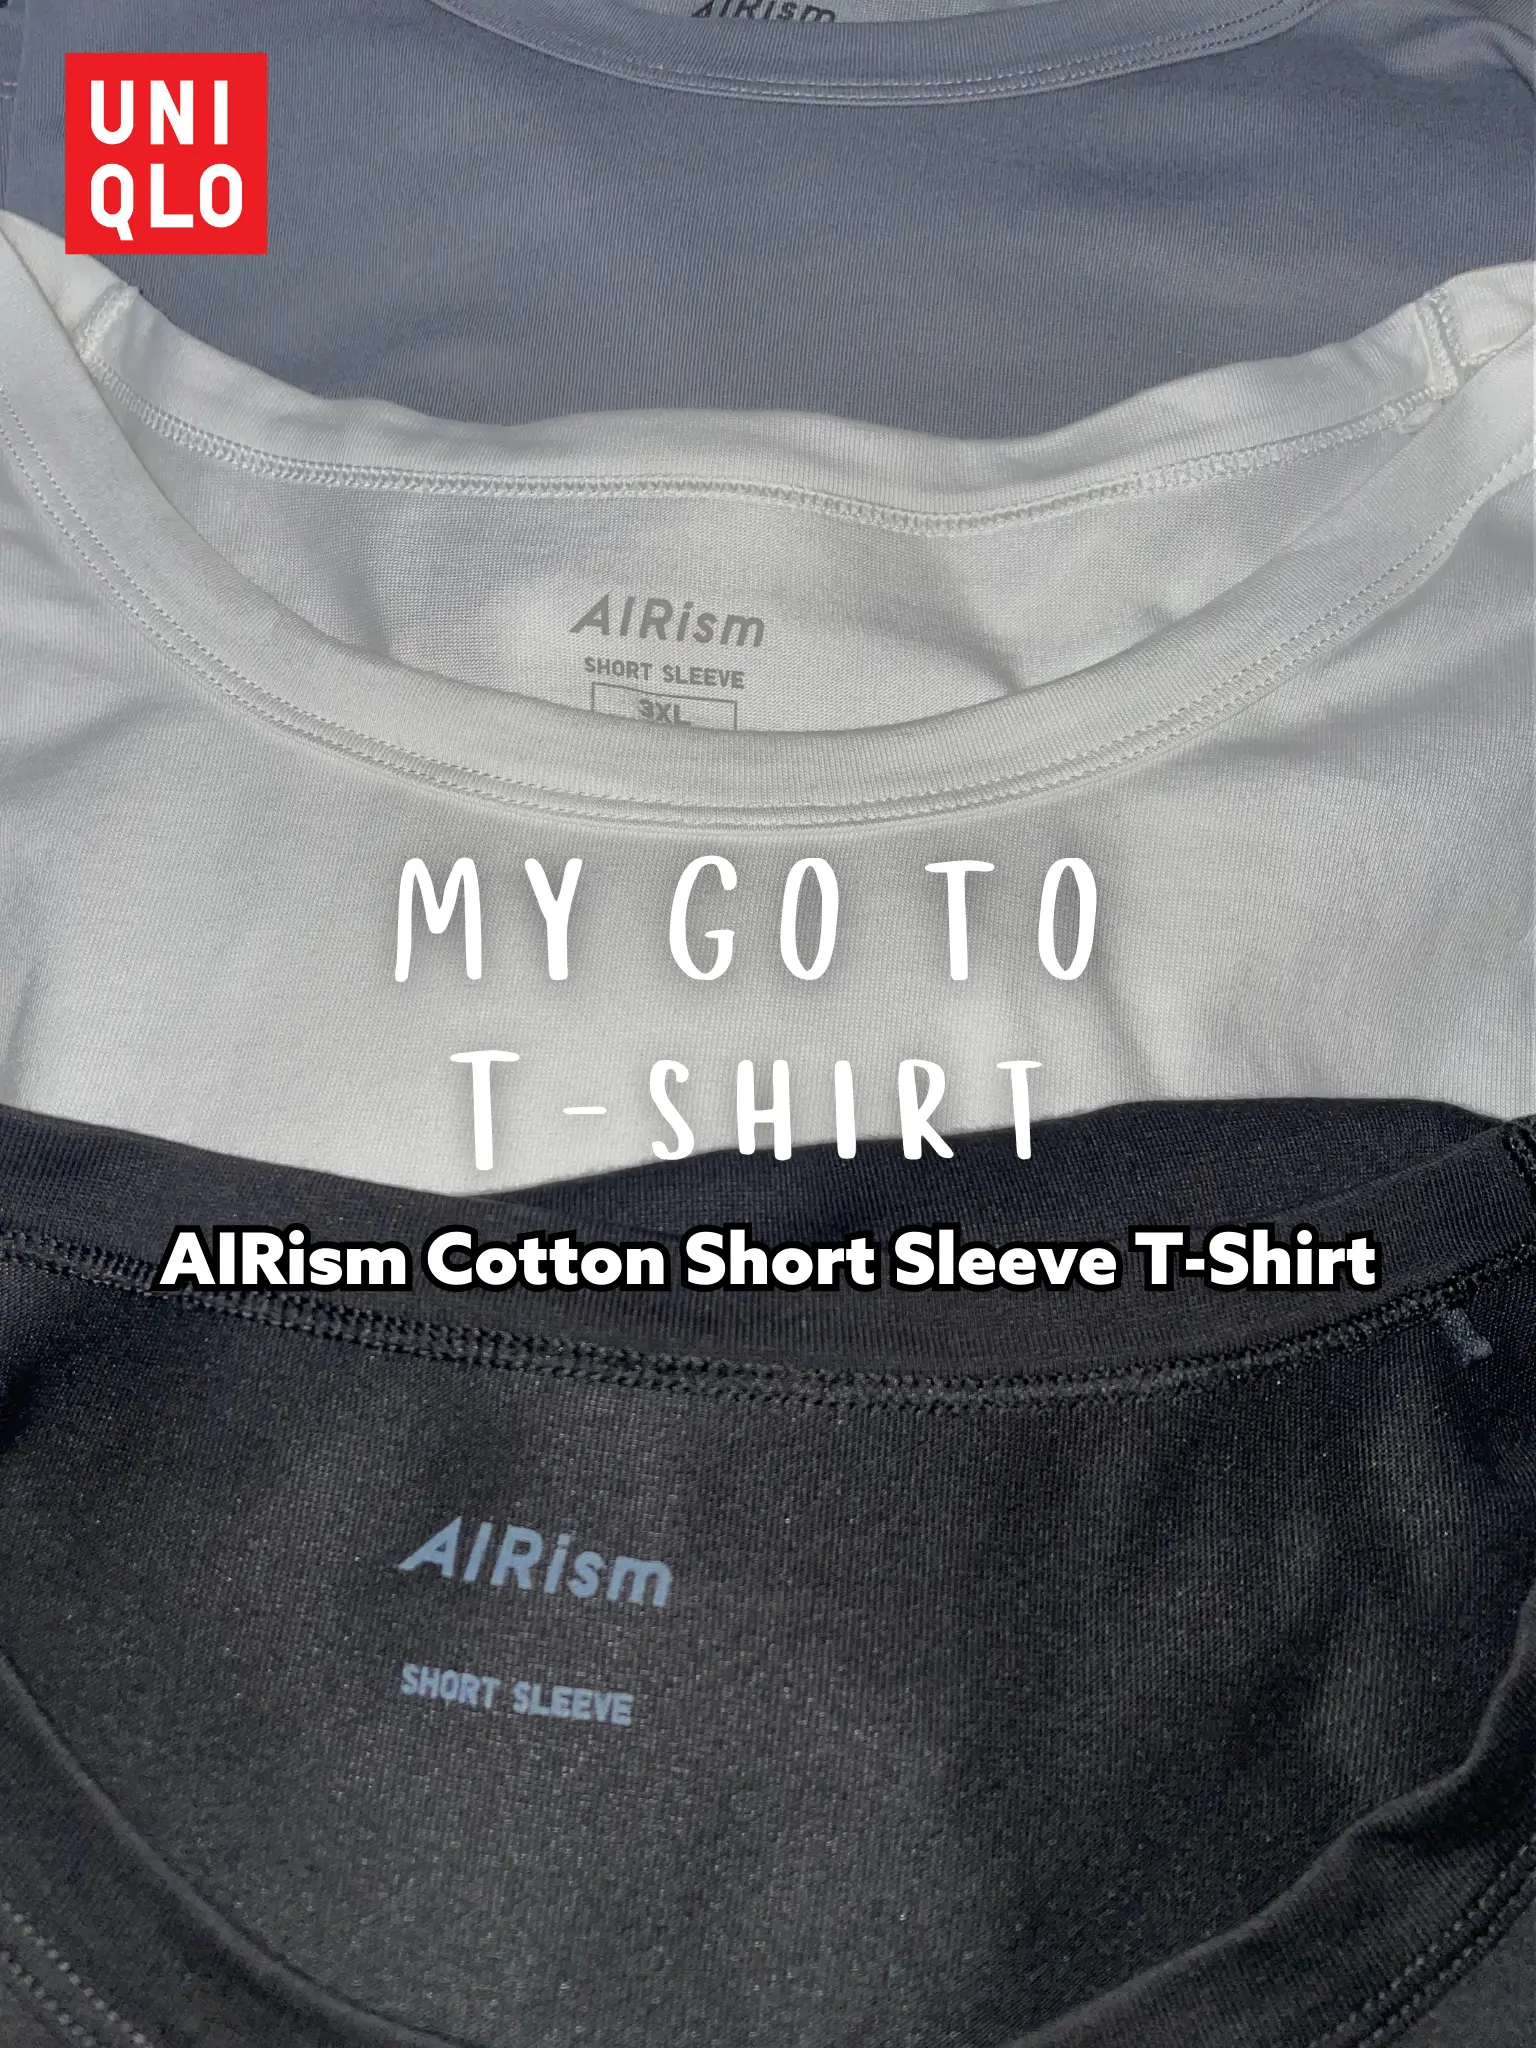 UNIQLO AIRISM COTTON CREW NECK Blue T-SHIRT Men's Short Sleeves Size 3XL